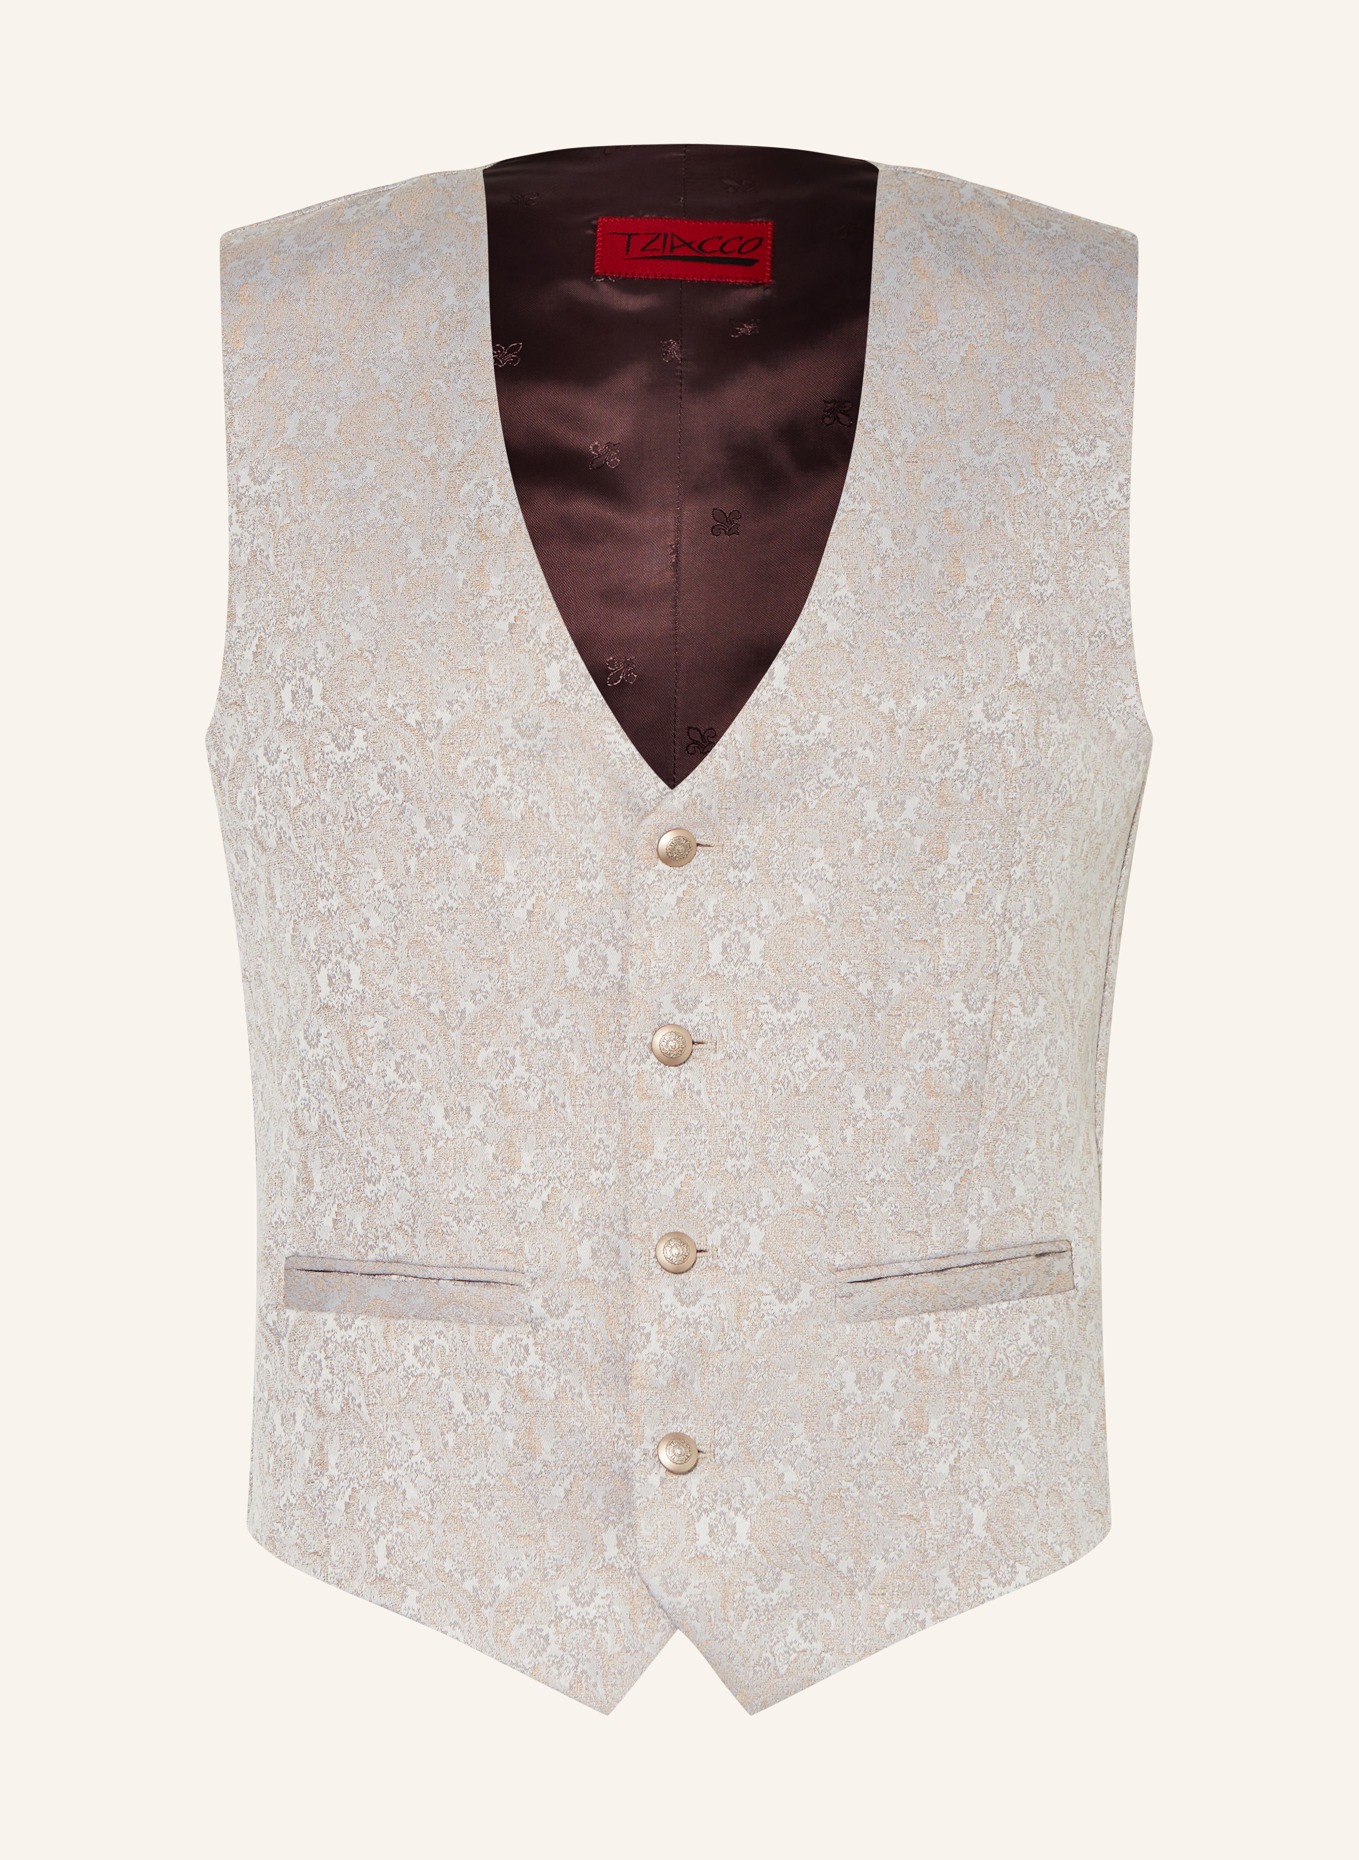 WILVORST Vest extra slim fit, Color: 083 Beige gem. (Image 1)